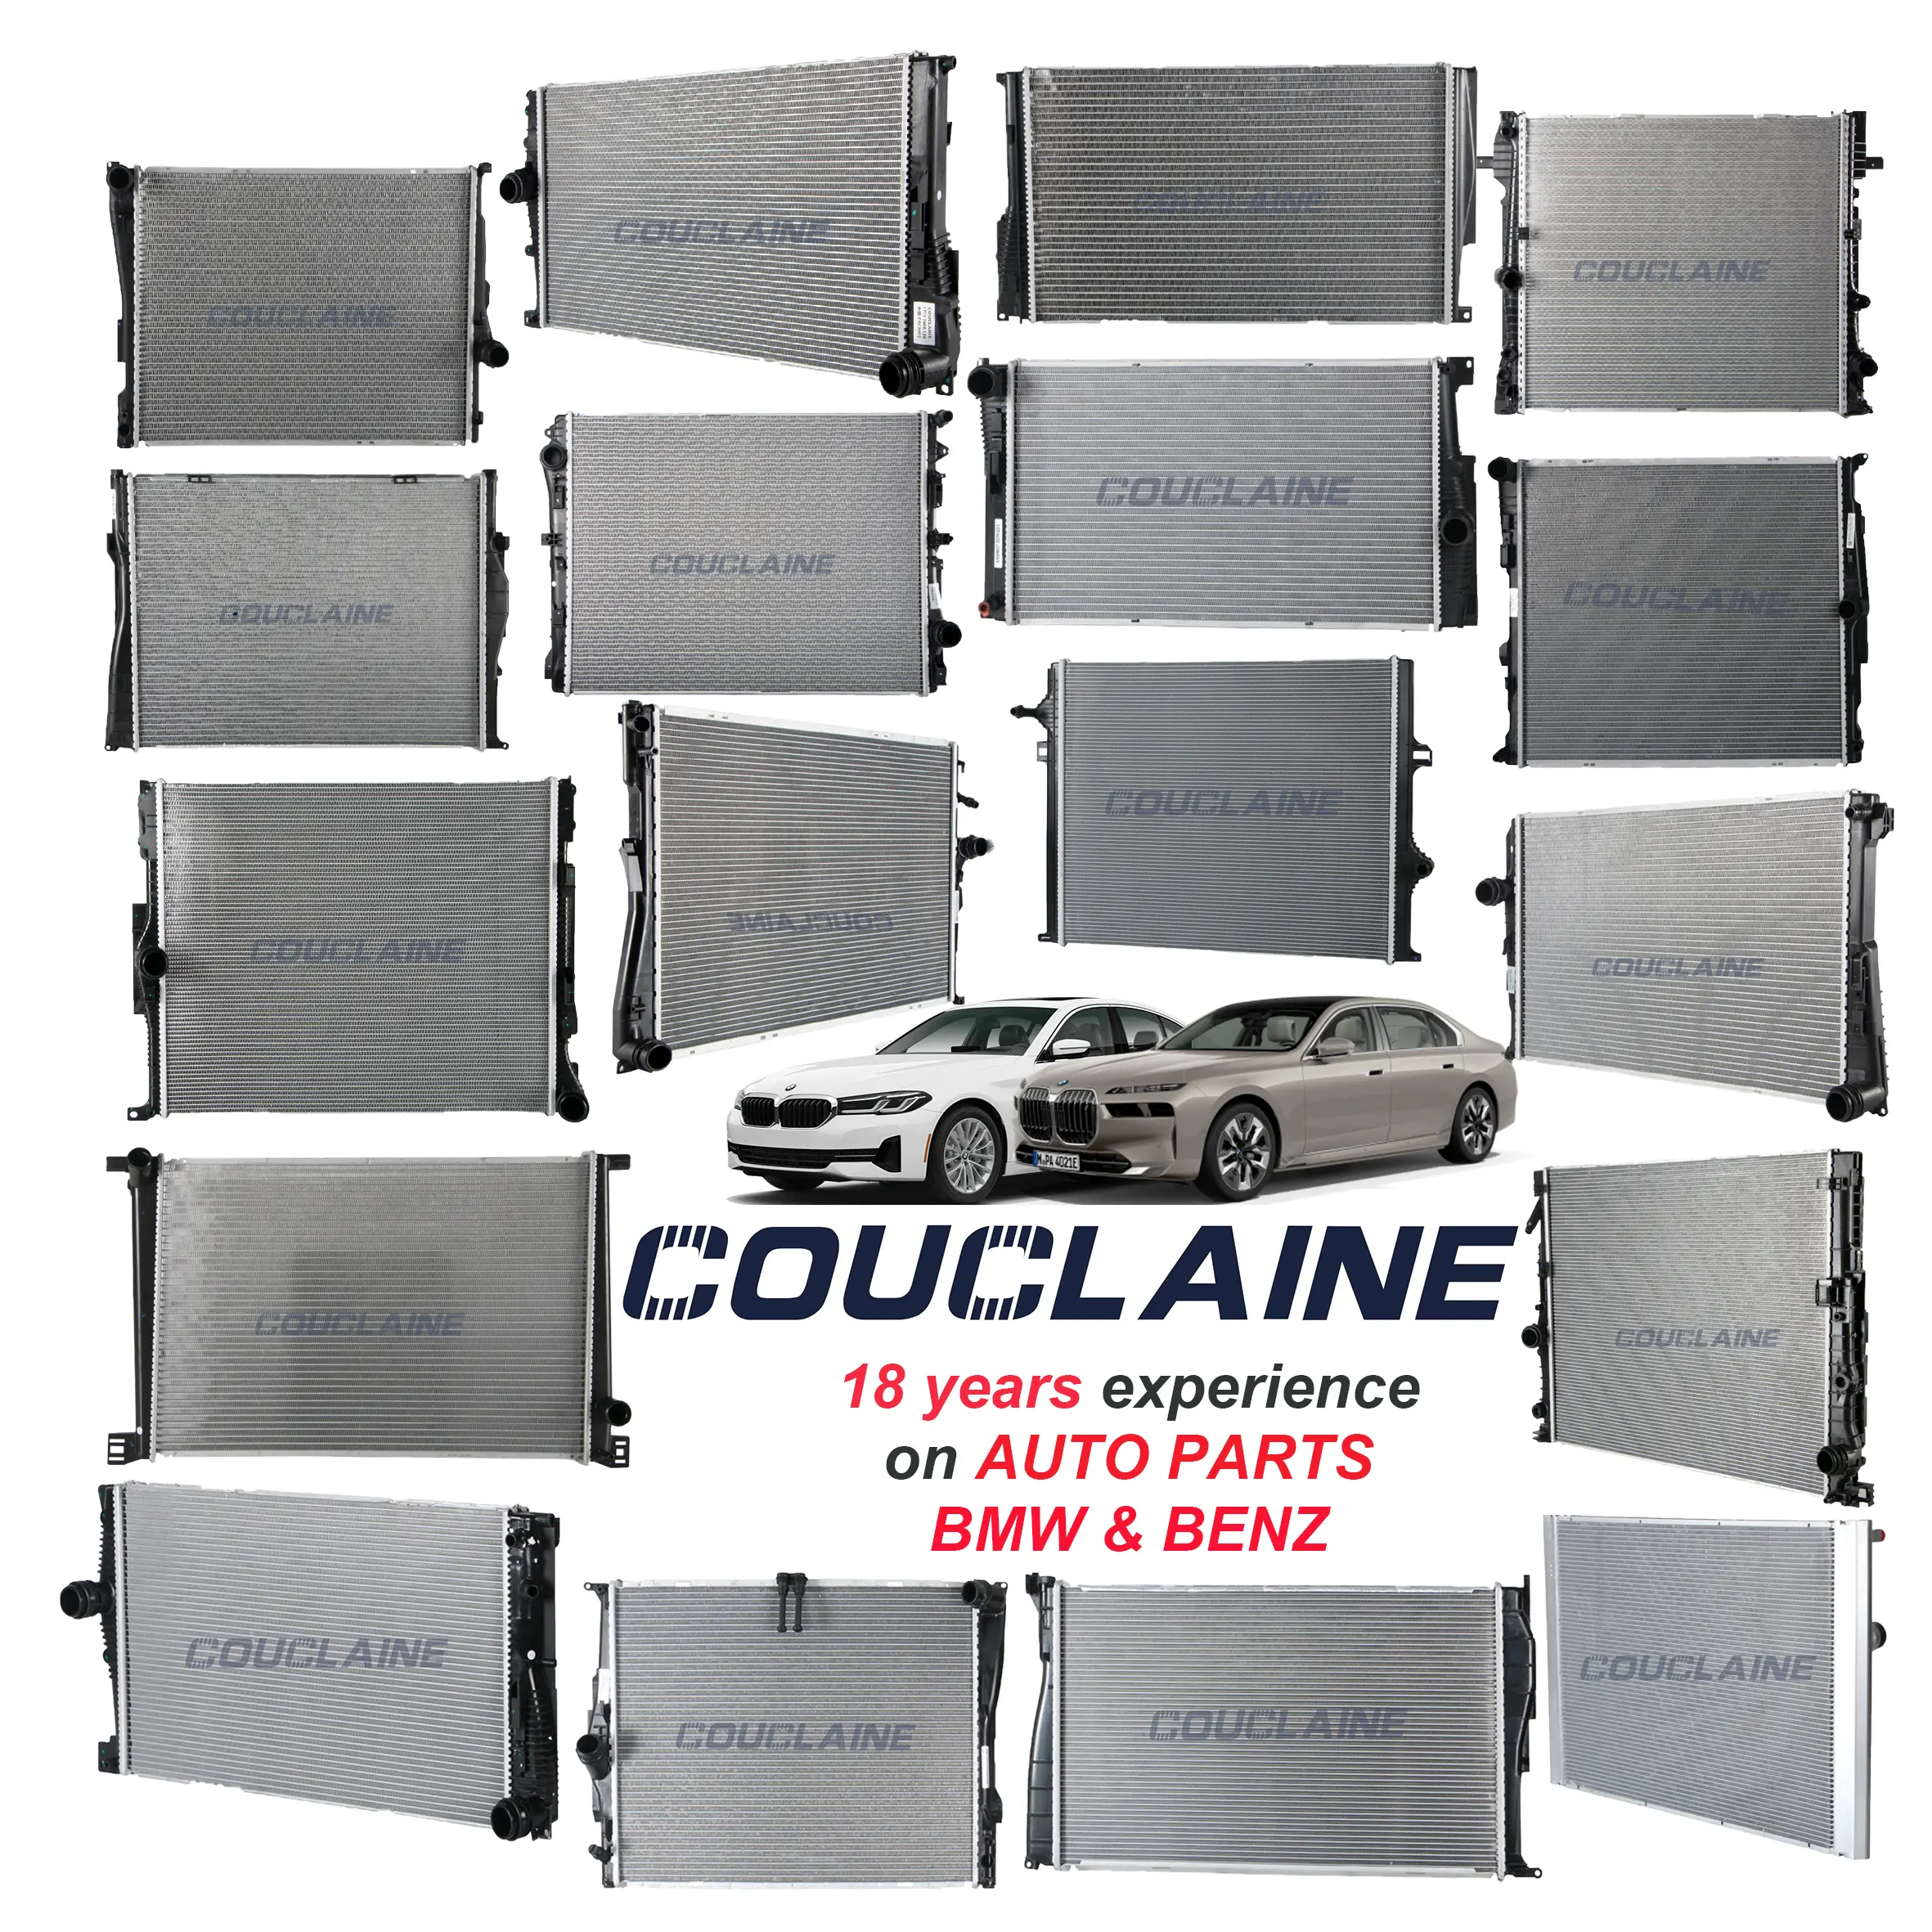 Sistema de refrigeración automático COUCLAINE, sistema de motor, radiador enfriador de aceite de transmisión para BMW, Mercedes Benz